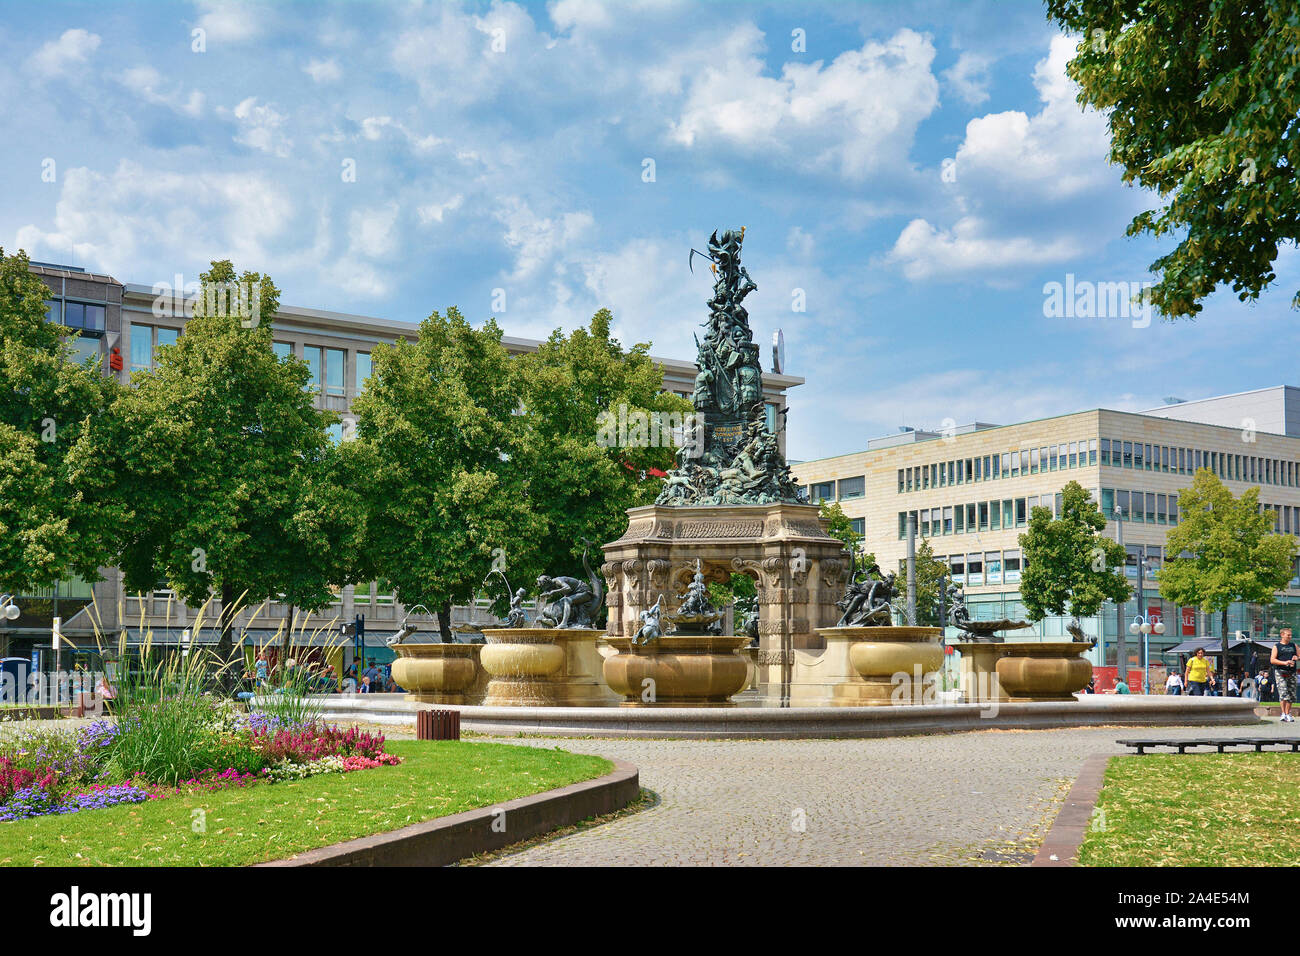 Mannheim, Germania - Agosto 2019: Fontana denominata "Grupello Piramide' con sculture nel parco di piccole dimensioni a piazza chiamata "Paradeplatz' nel centro della città Foto Stock